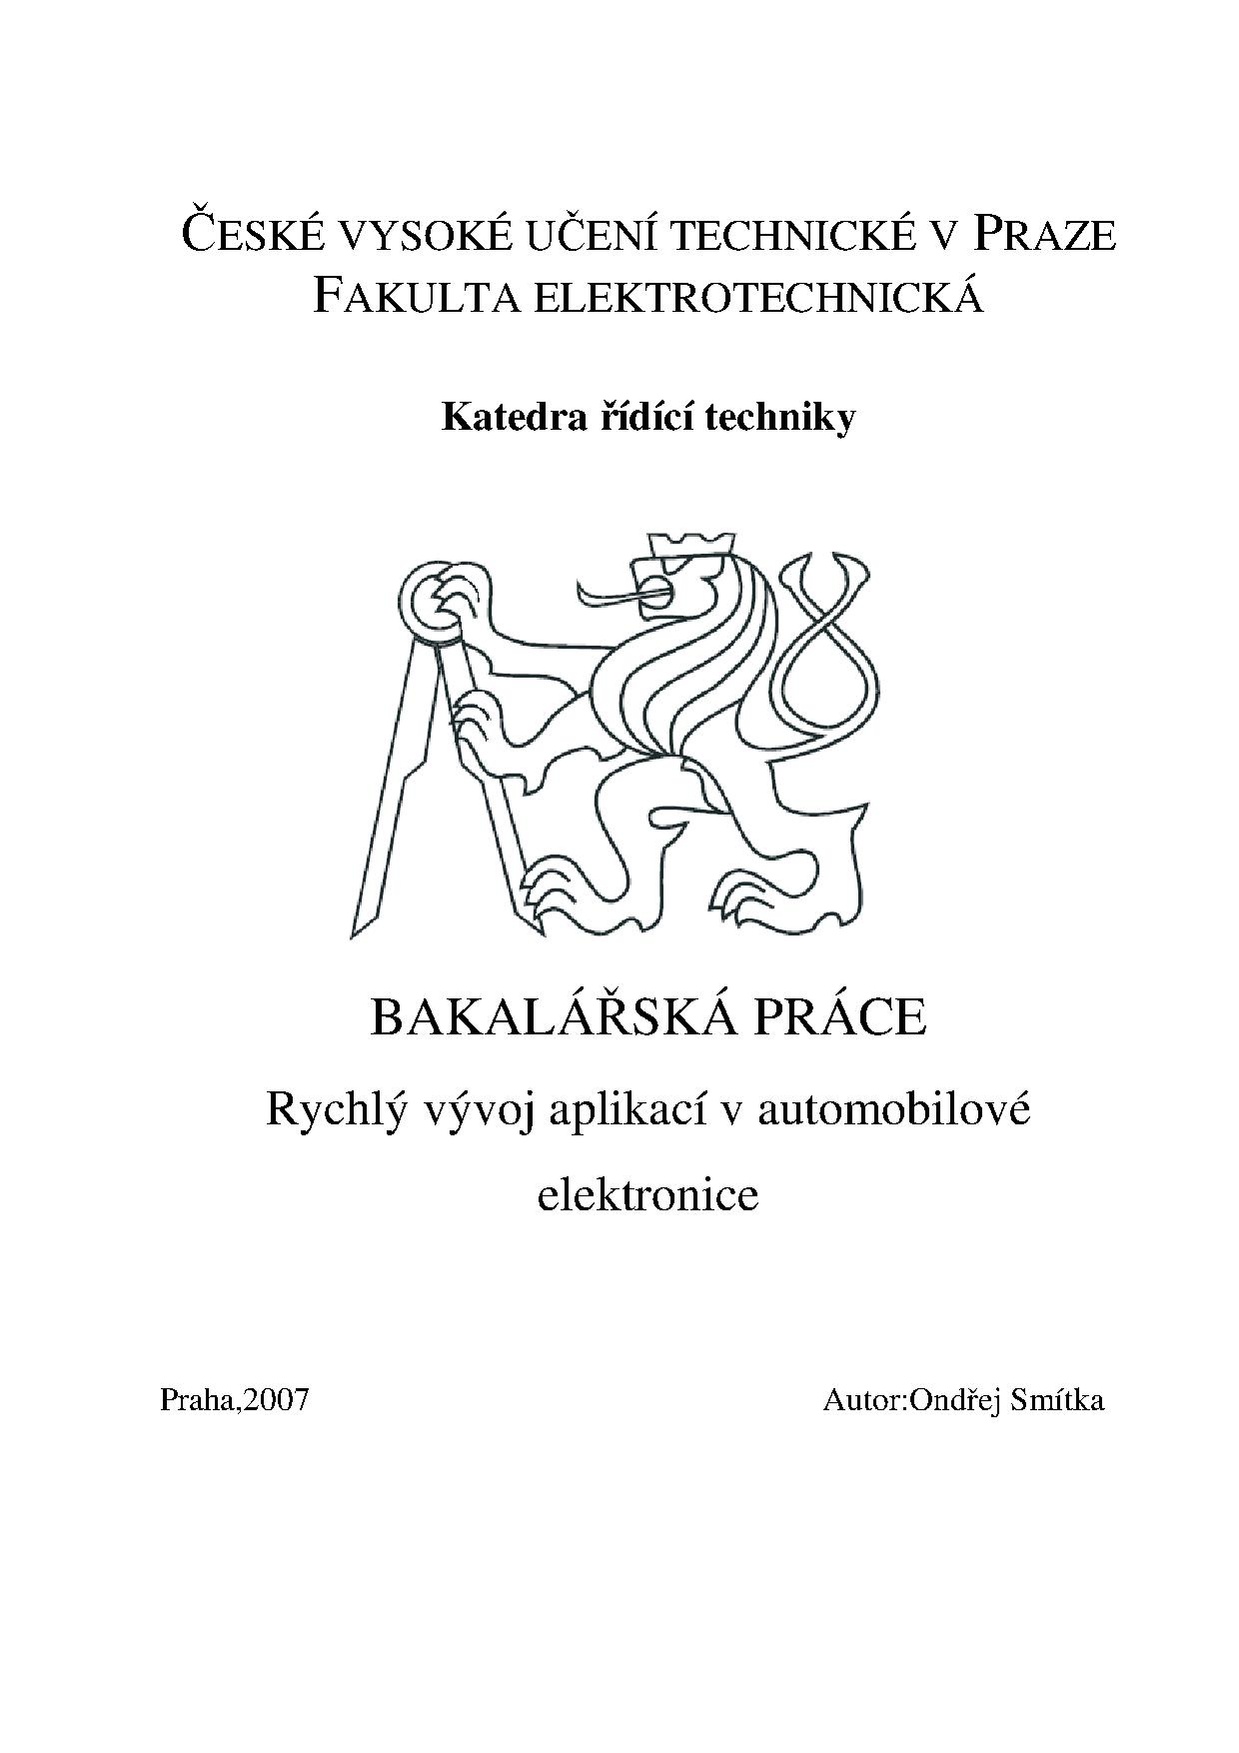 Bp 2007 smitka ondrej.pdf